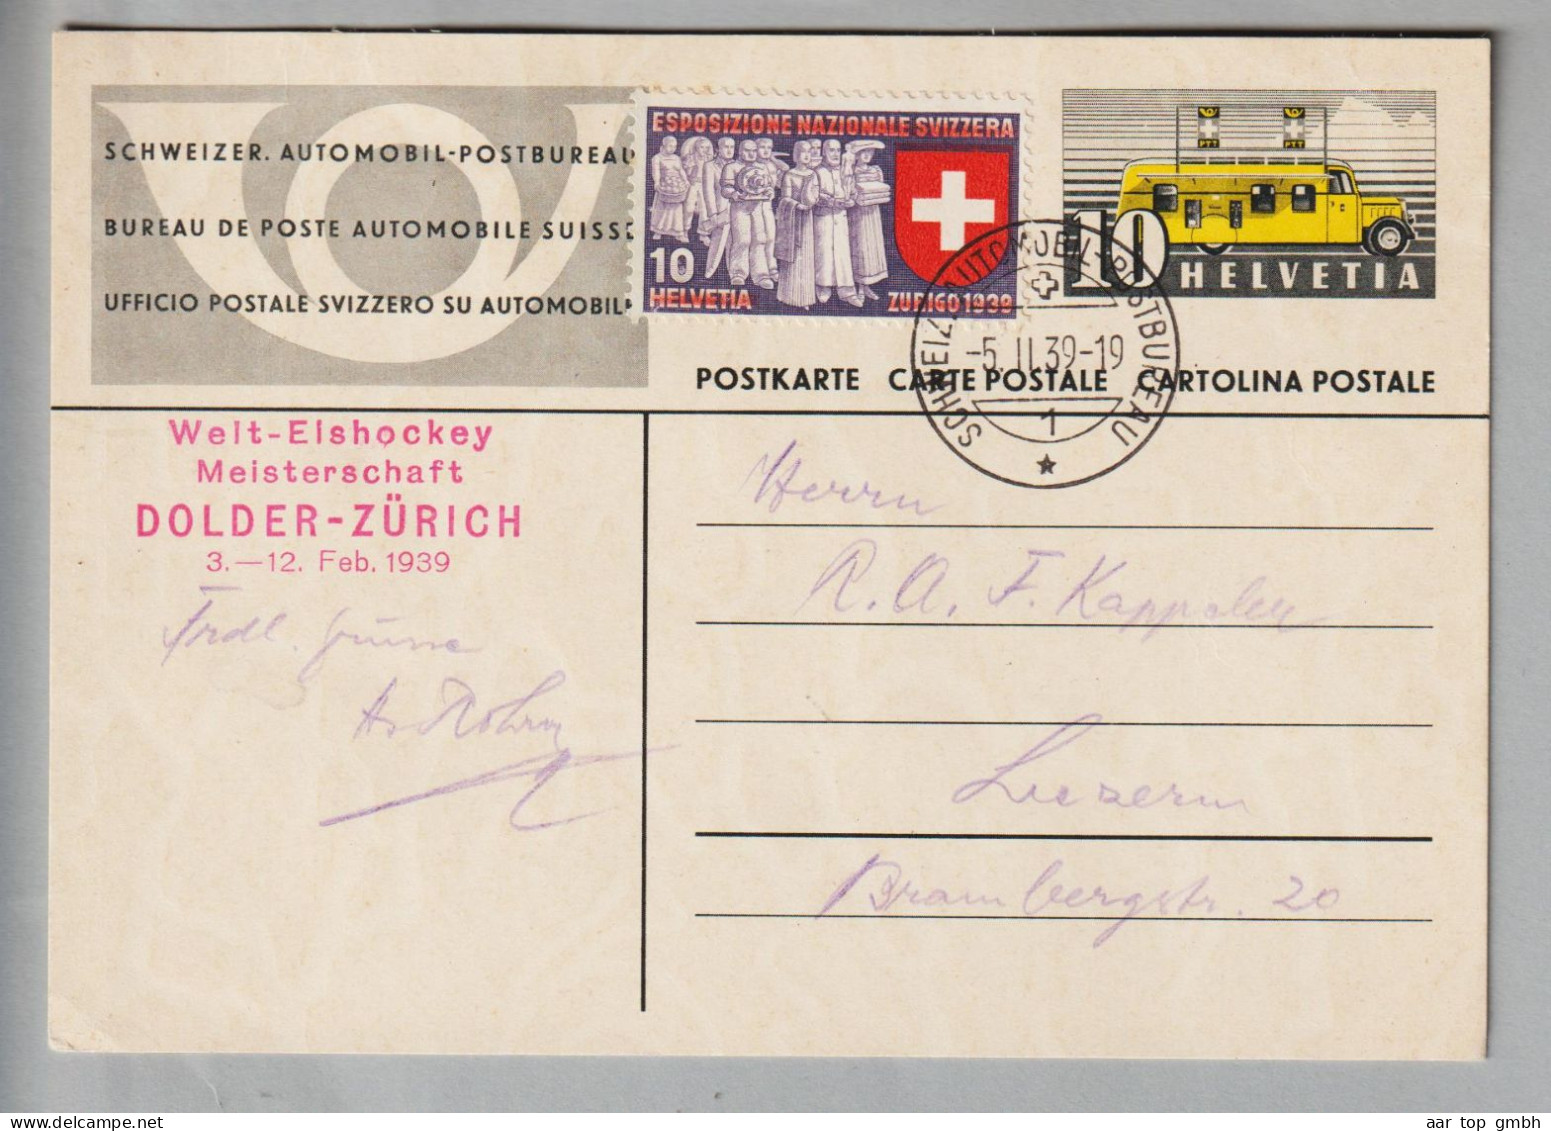 Motiv Eishockey Weltmeisterschaft Dolder Zürich 1939-02-05 Ganzsache Mit Sonderstempel - Jockey (sobre Hielo)